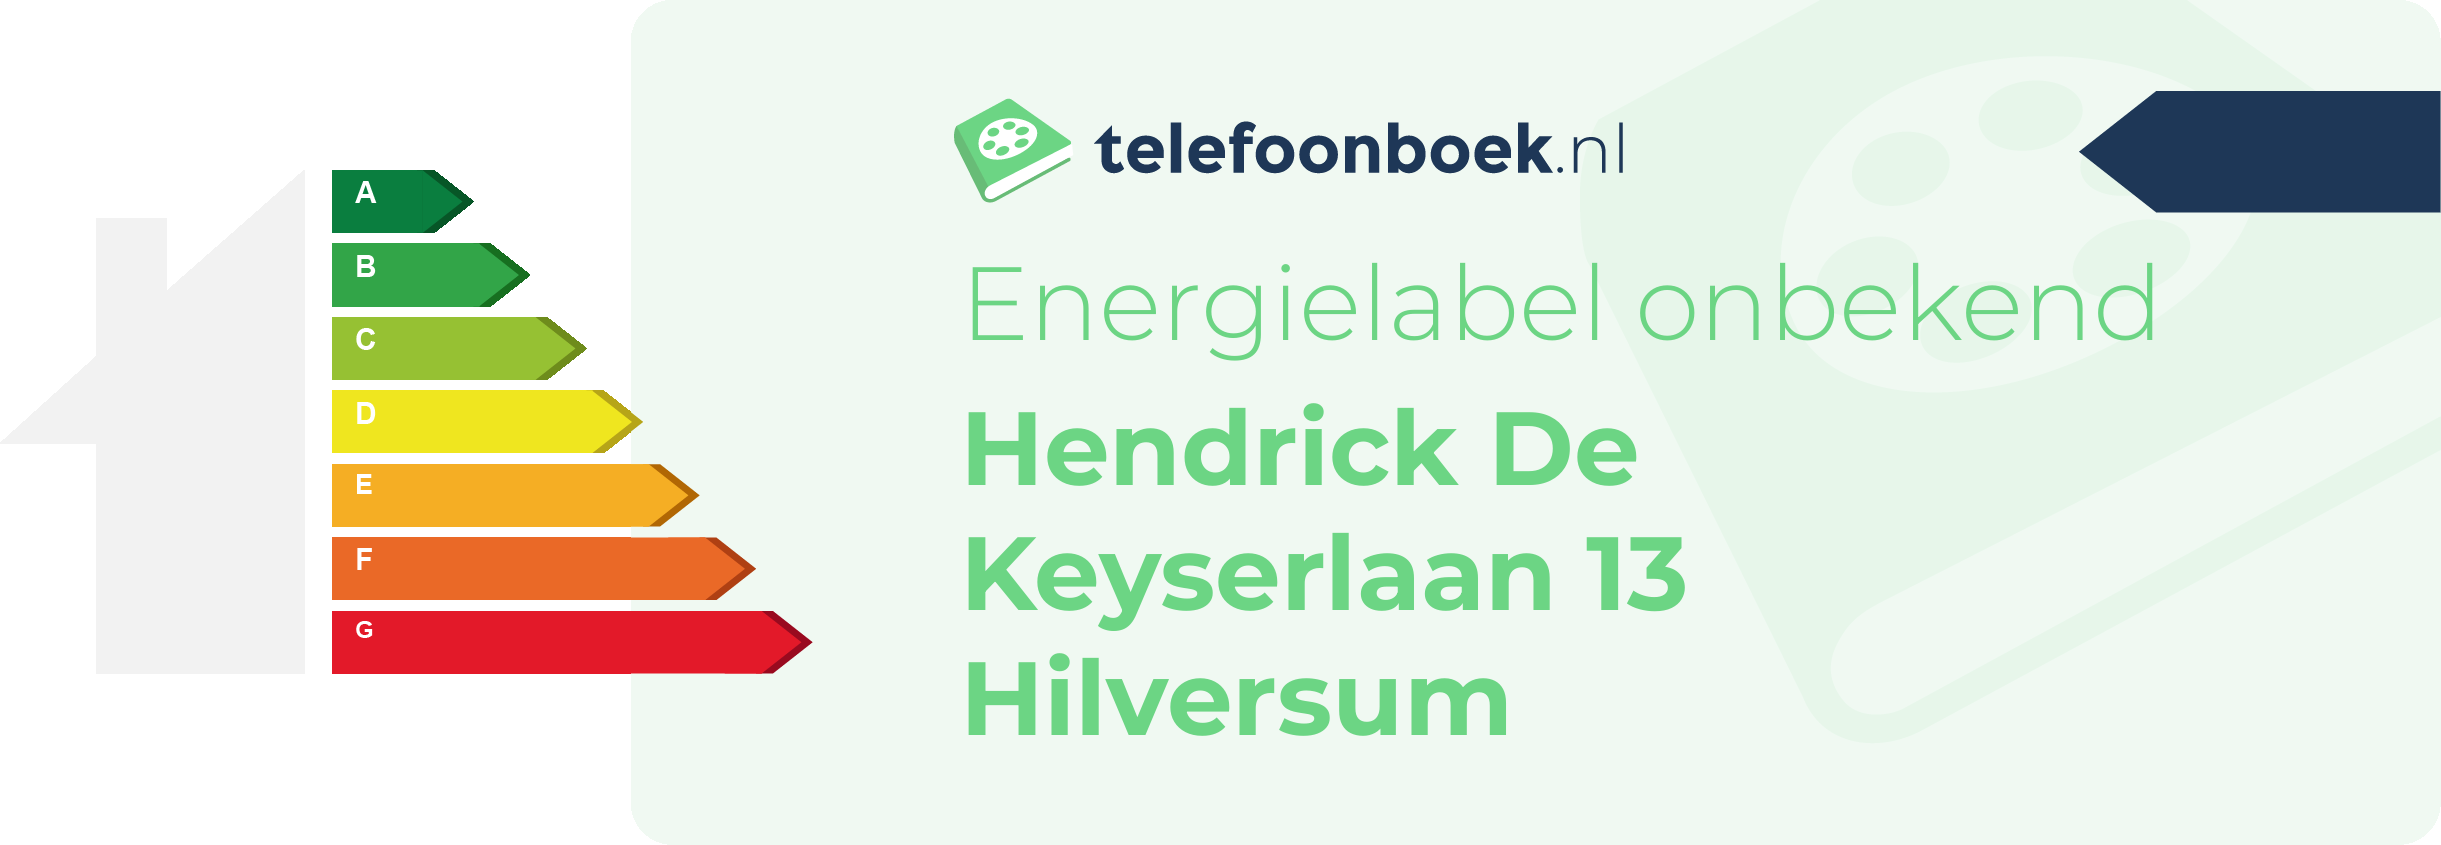 Energielabel Hendrick De Keyserlaan 13 Hilversum